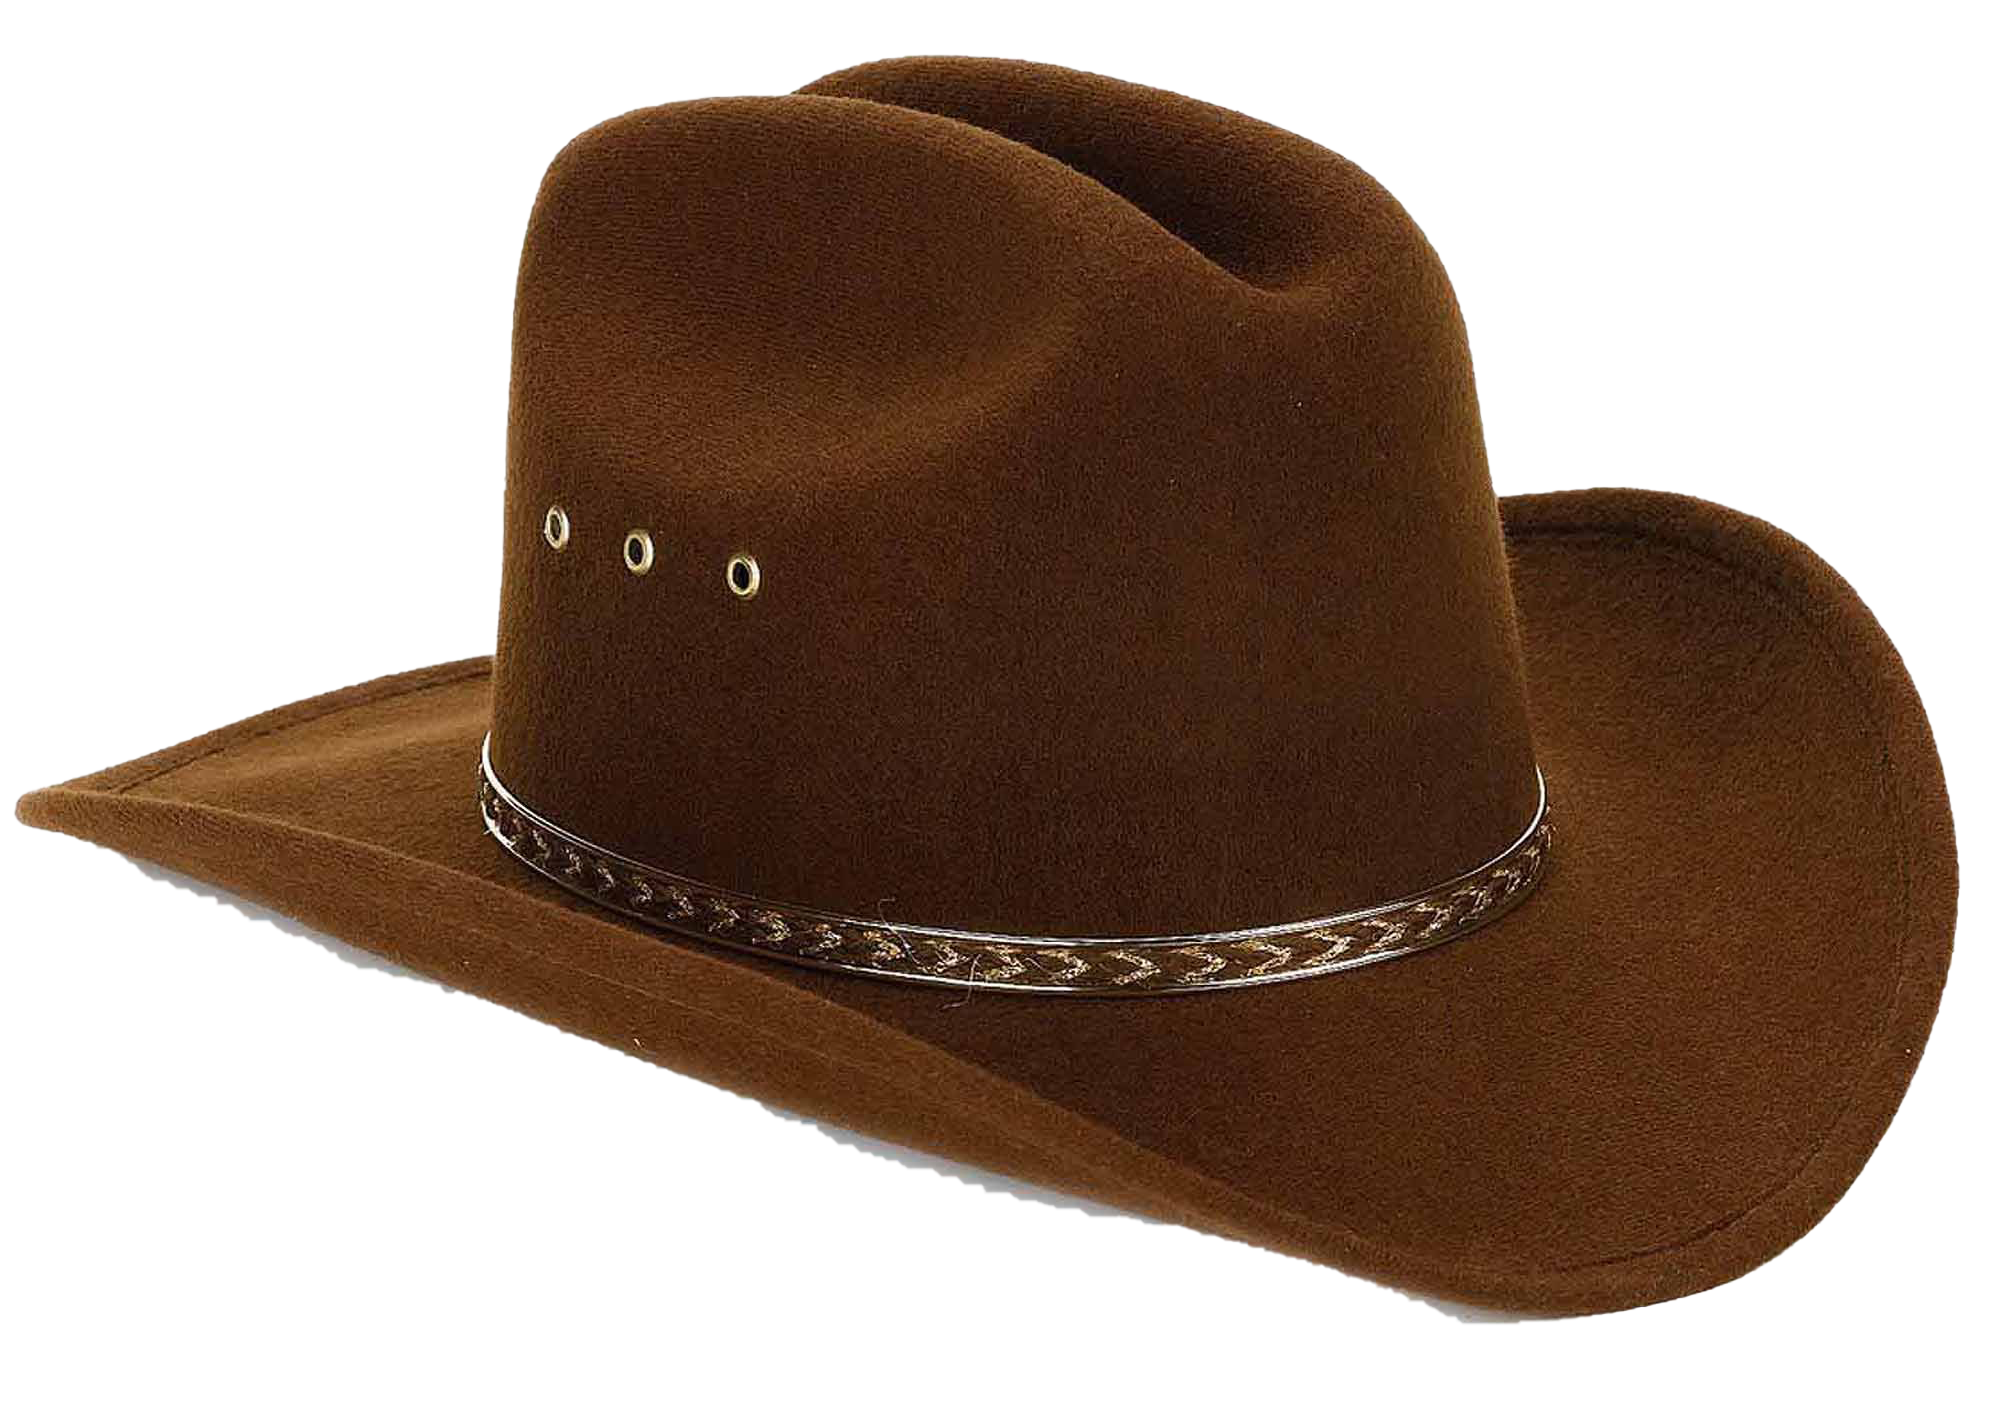 Brown Cowboy Hat Transparent Images